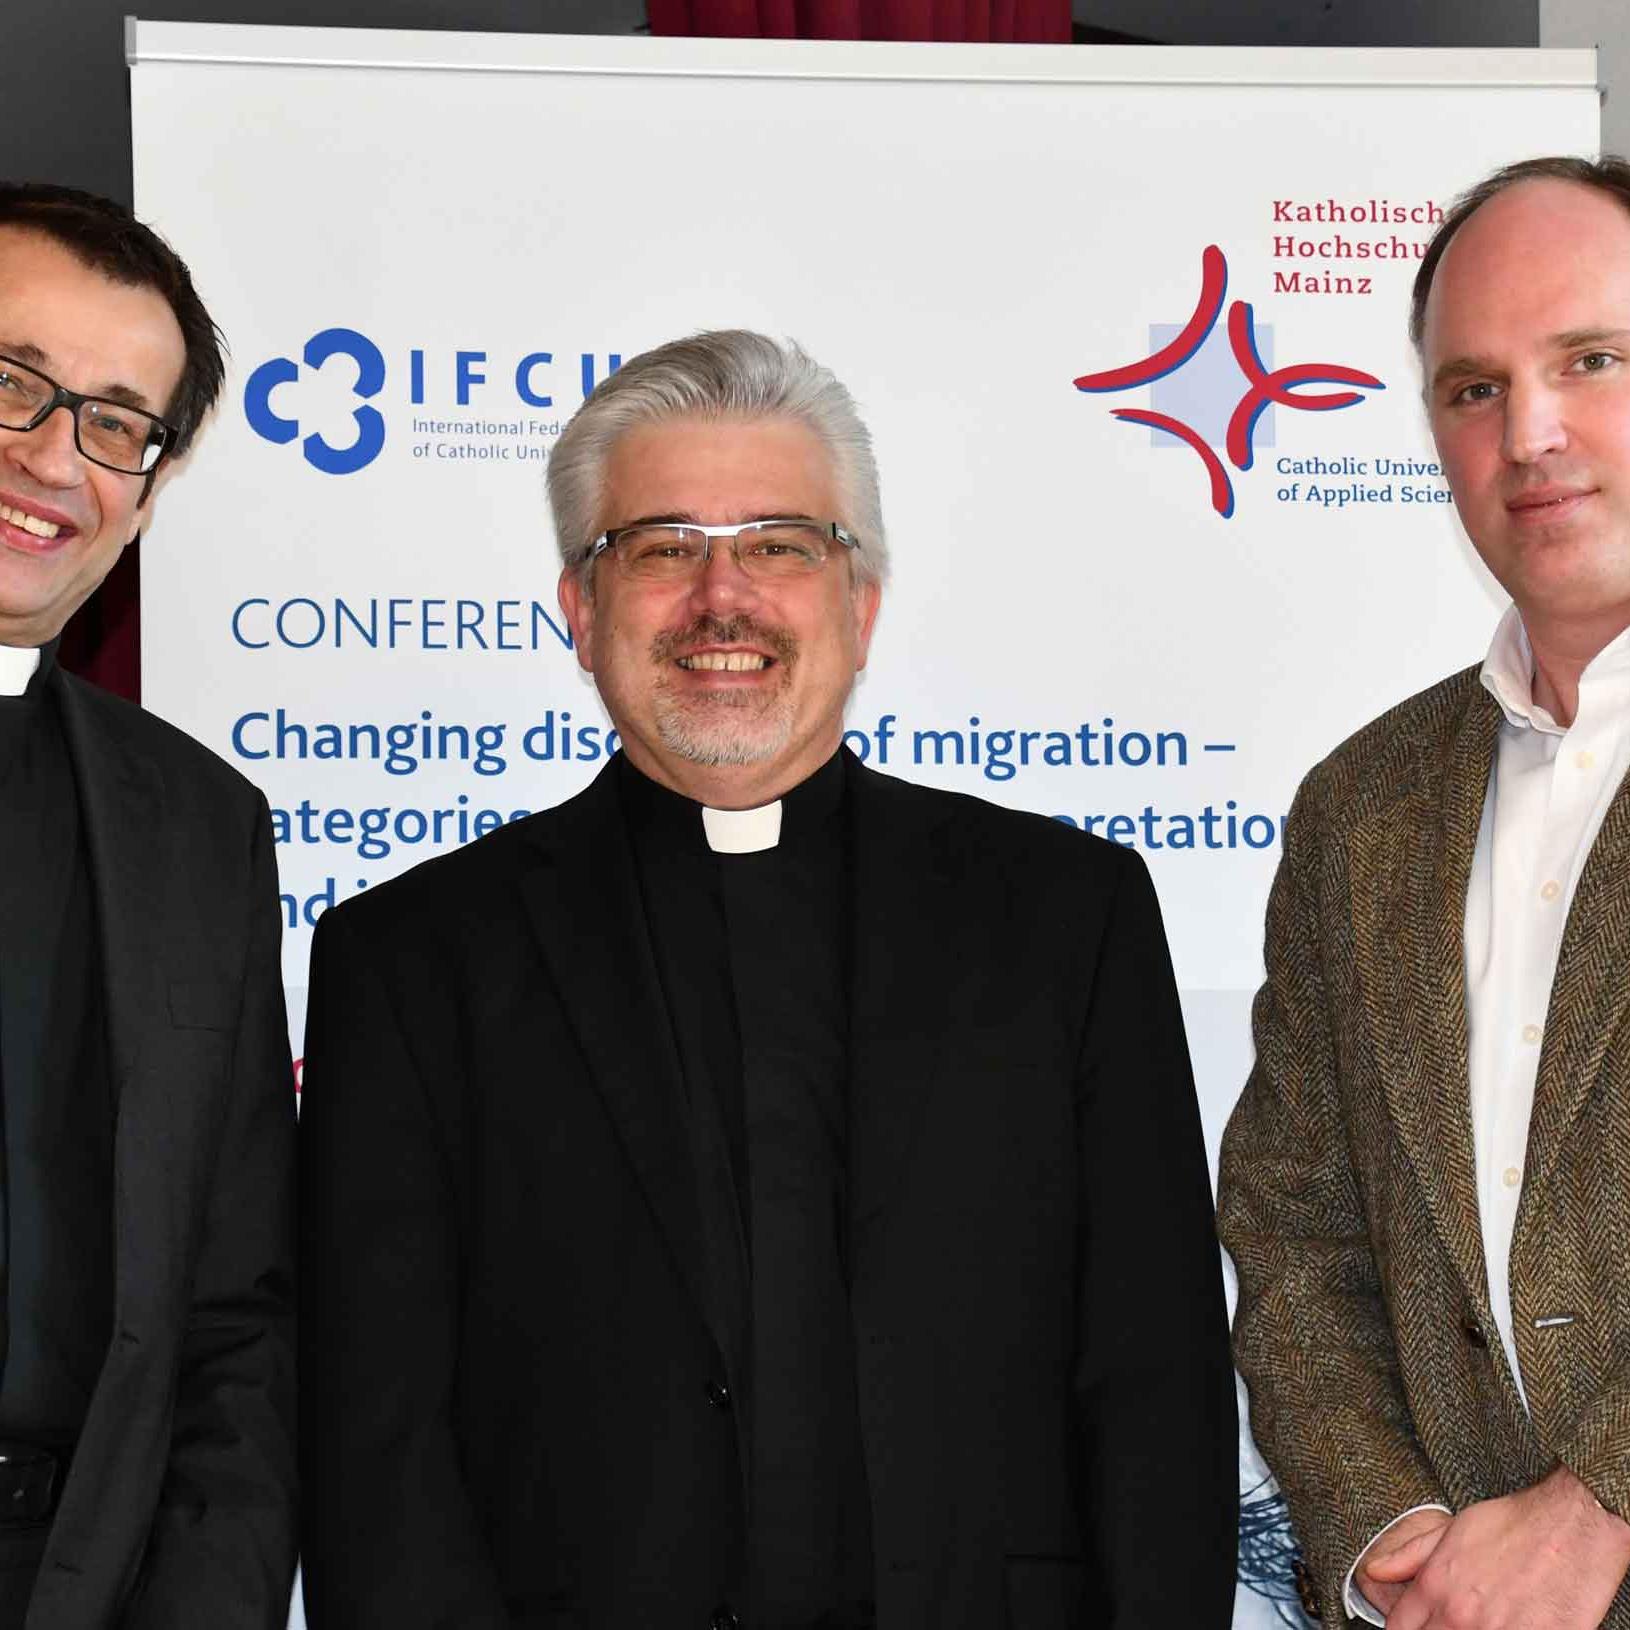 Internationale Tagung zu Fragen der Migration und Integration an der Katholischen Hochschule Mainz (KH Mainz)